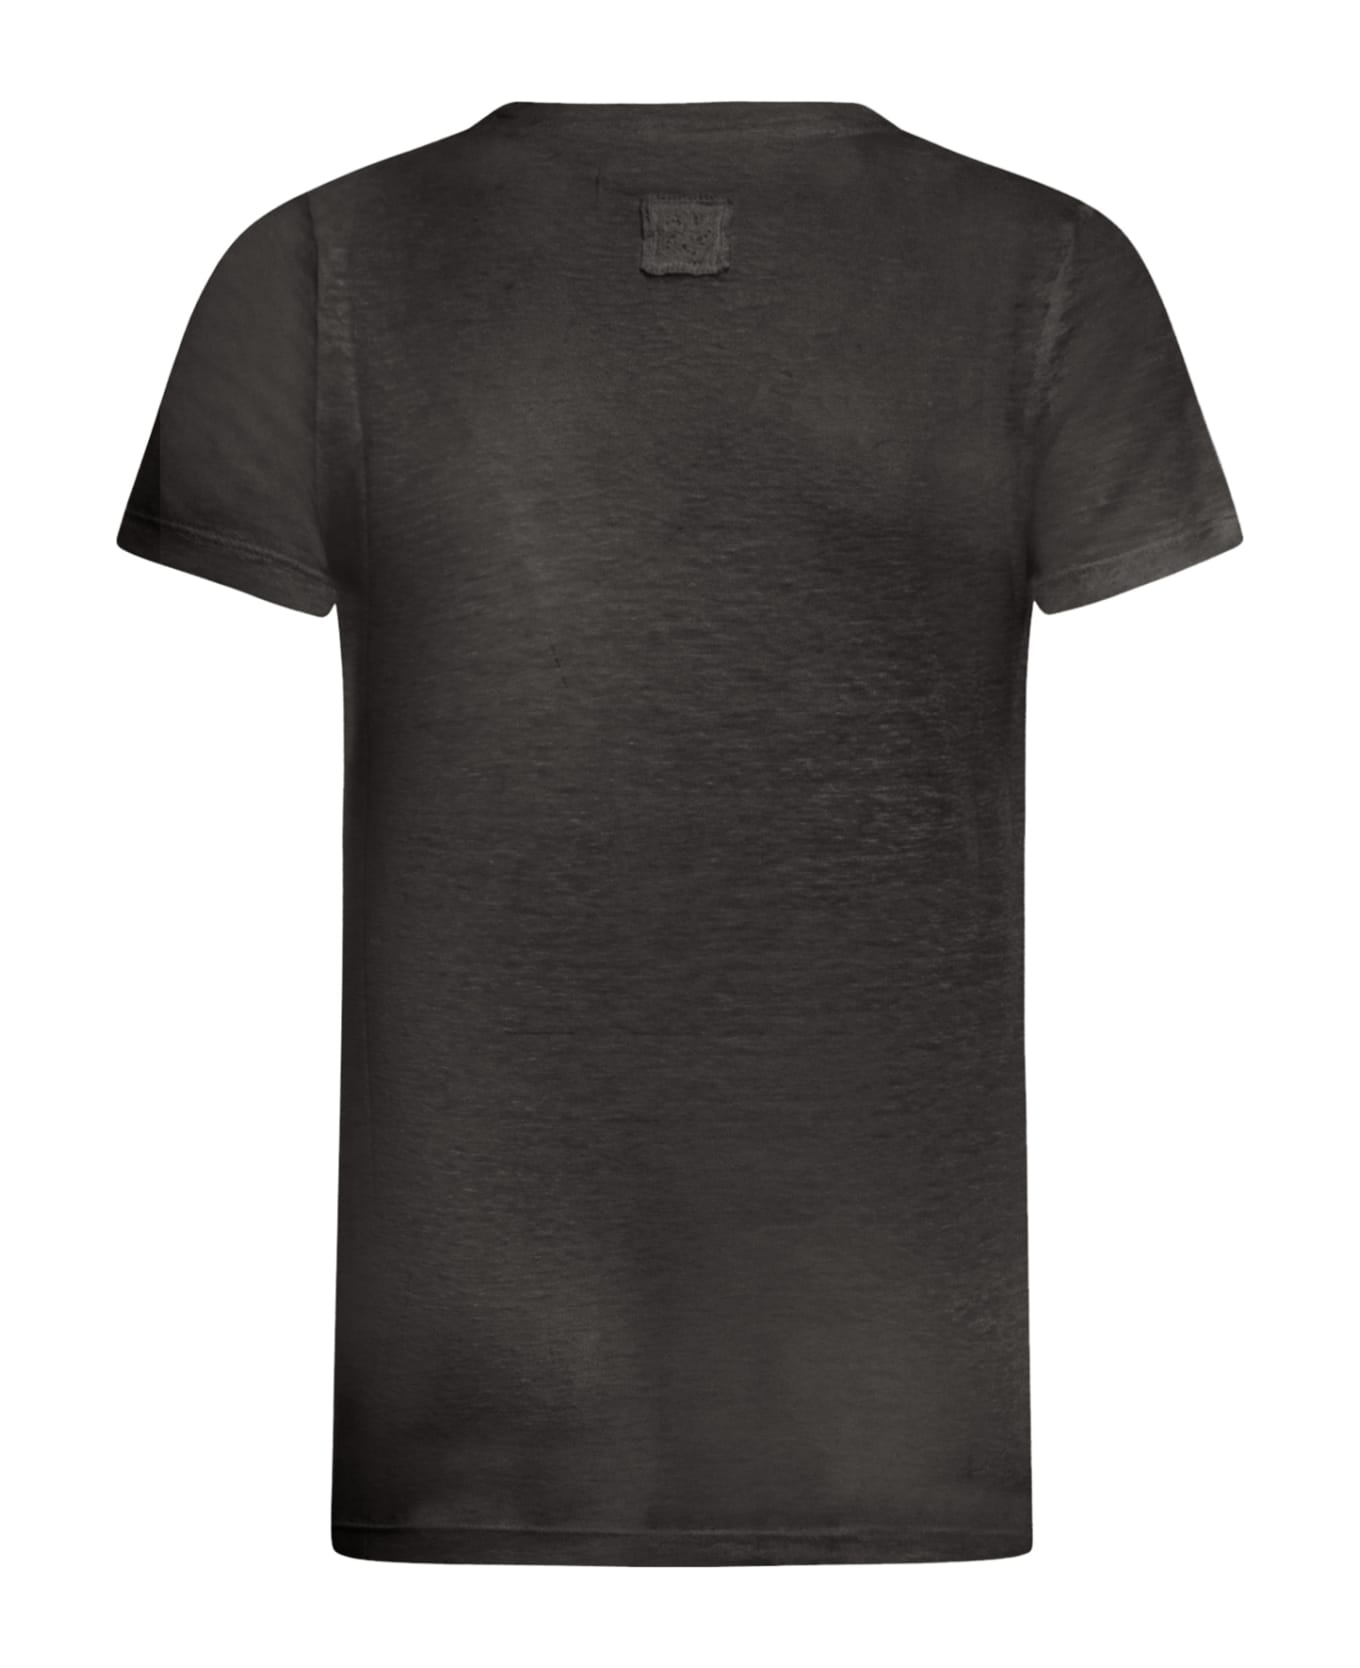 120% Lino Short Sleeve Women Tshirt - R Black